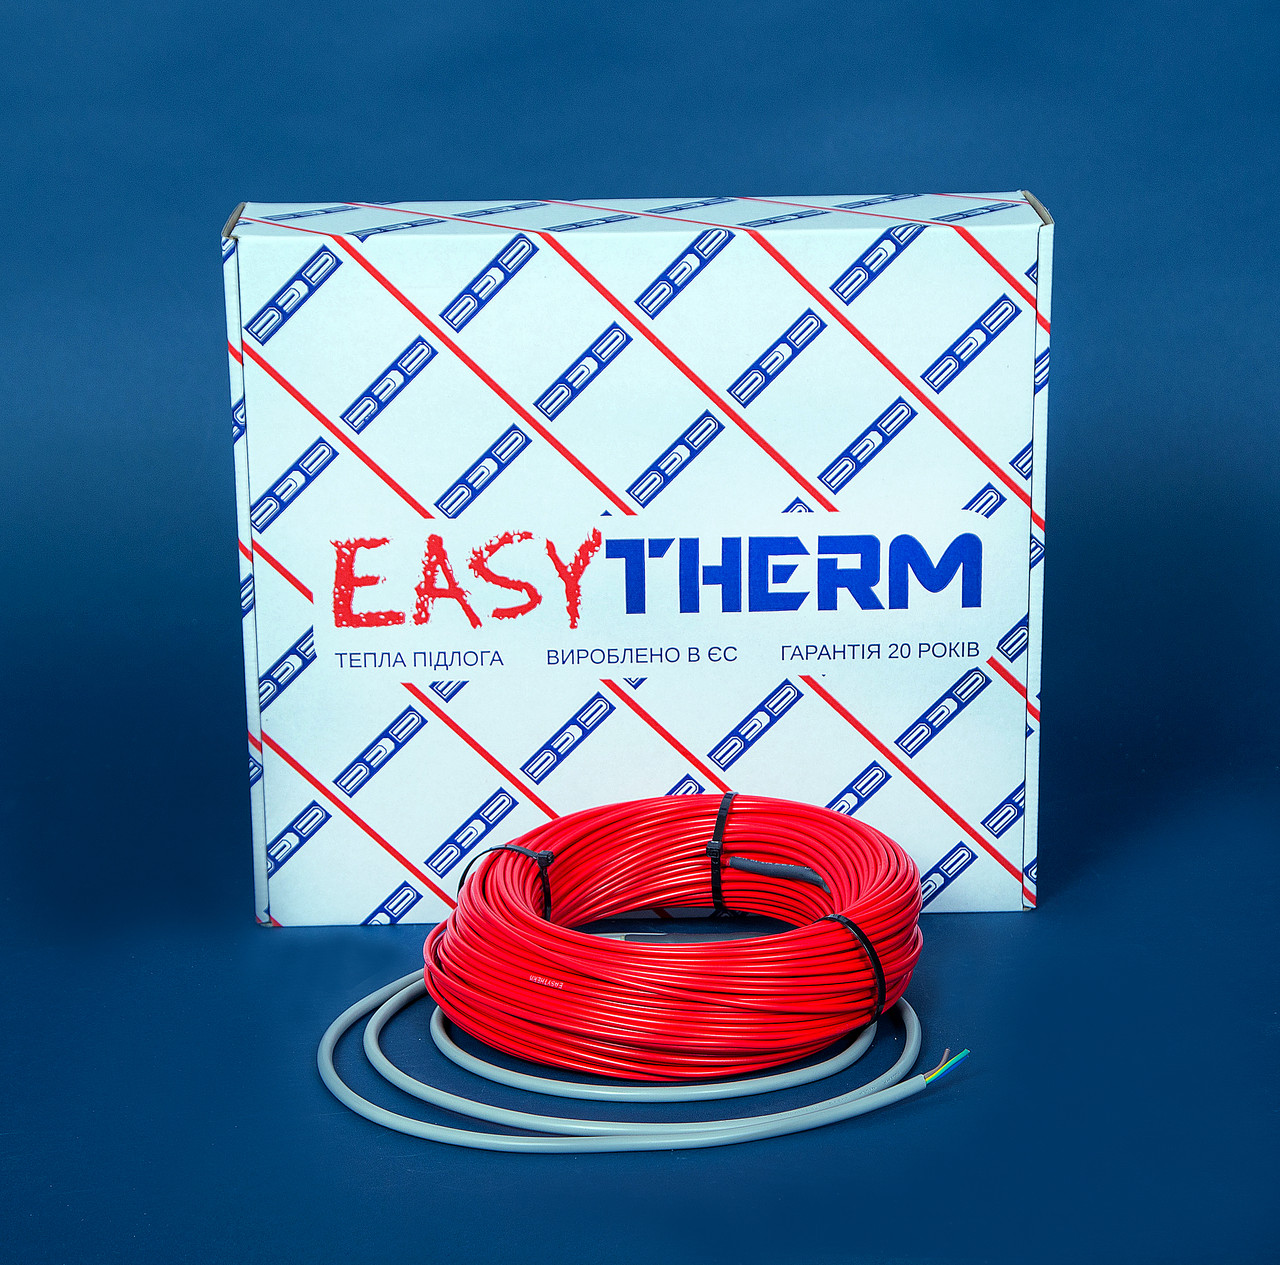 Электрический теплый пол EasyTherm Easycable 85.0 отзывы - изображения 5